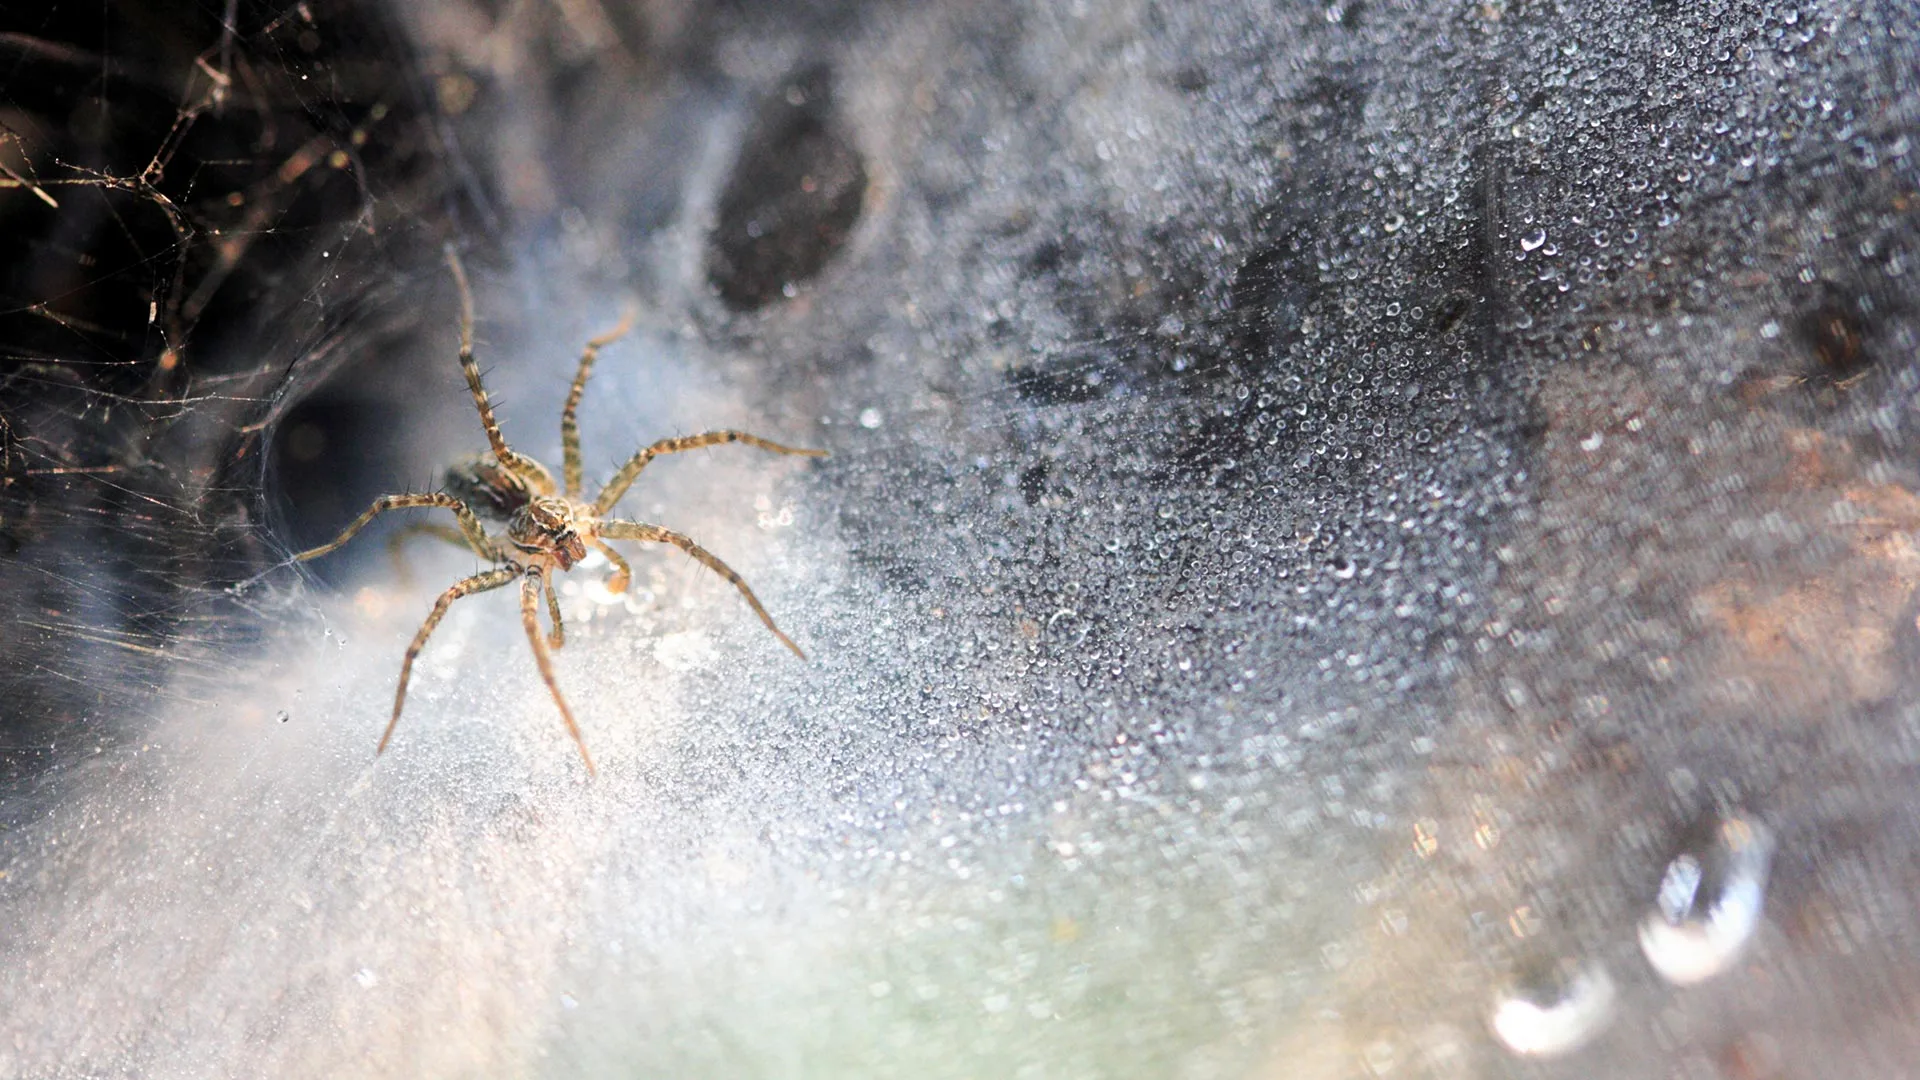 Spider in a web near Alton, IL.